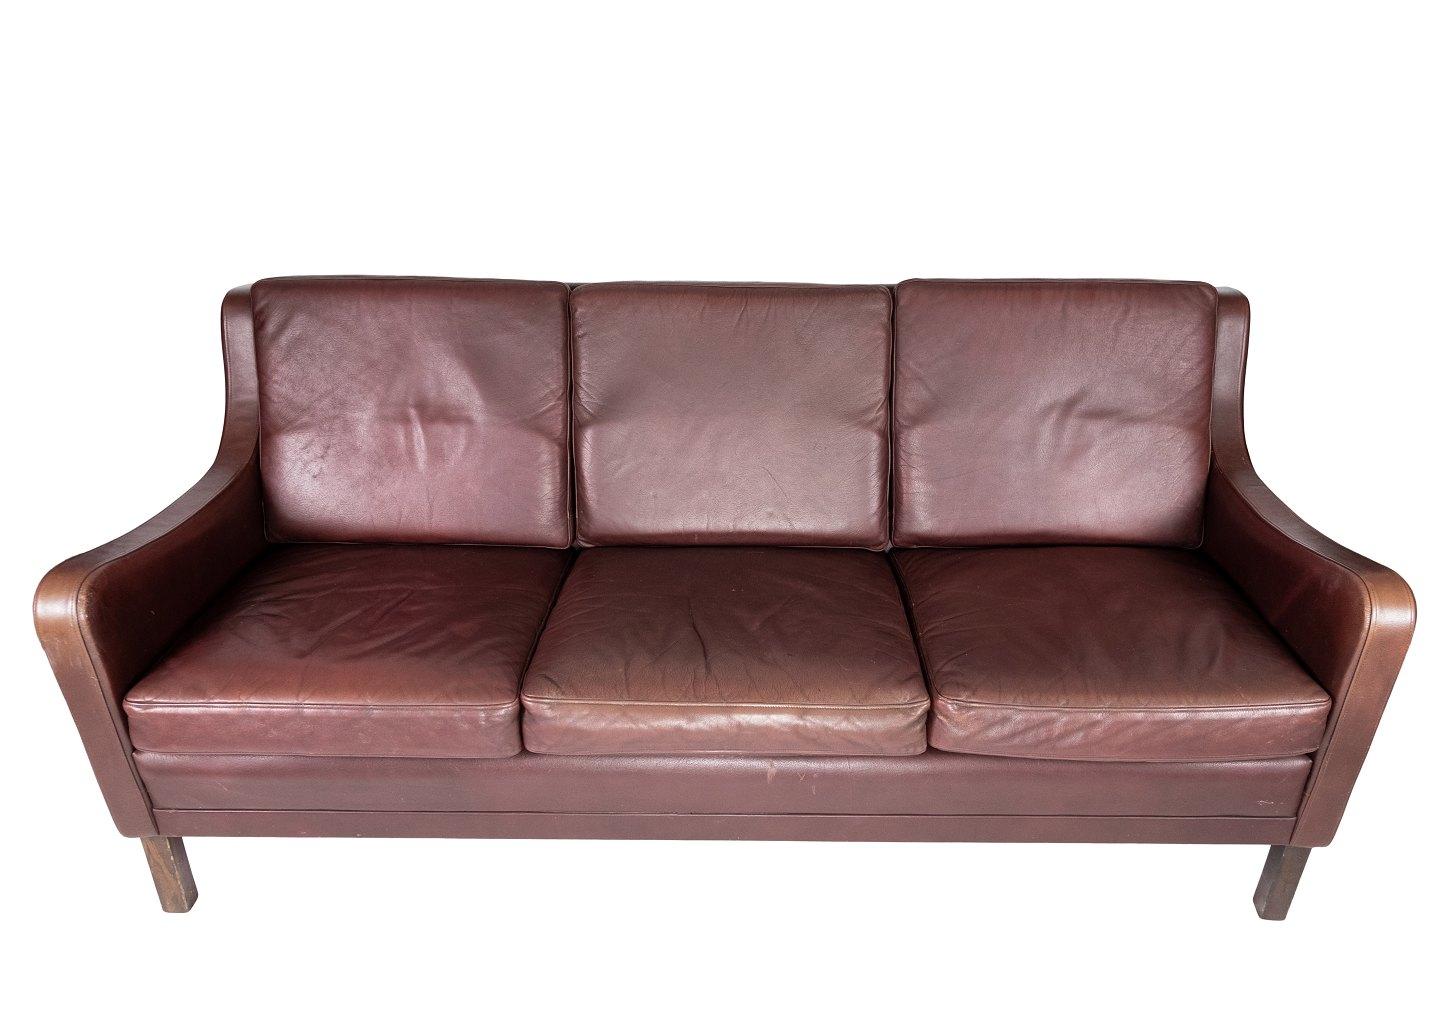 Das Dreisitzer-Sofa aus rotbraunem Leder von Stouby Møbler, das in den 1960er Jahren hergestellt wurde, strahlt zeitlose Eleganz und Komfort aus. Die renommierte dänische Möbelfirma Stouby Møbler ist für ihre hochwertige Handwerkskunst und ihr